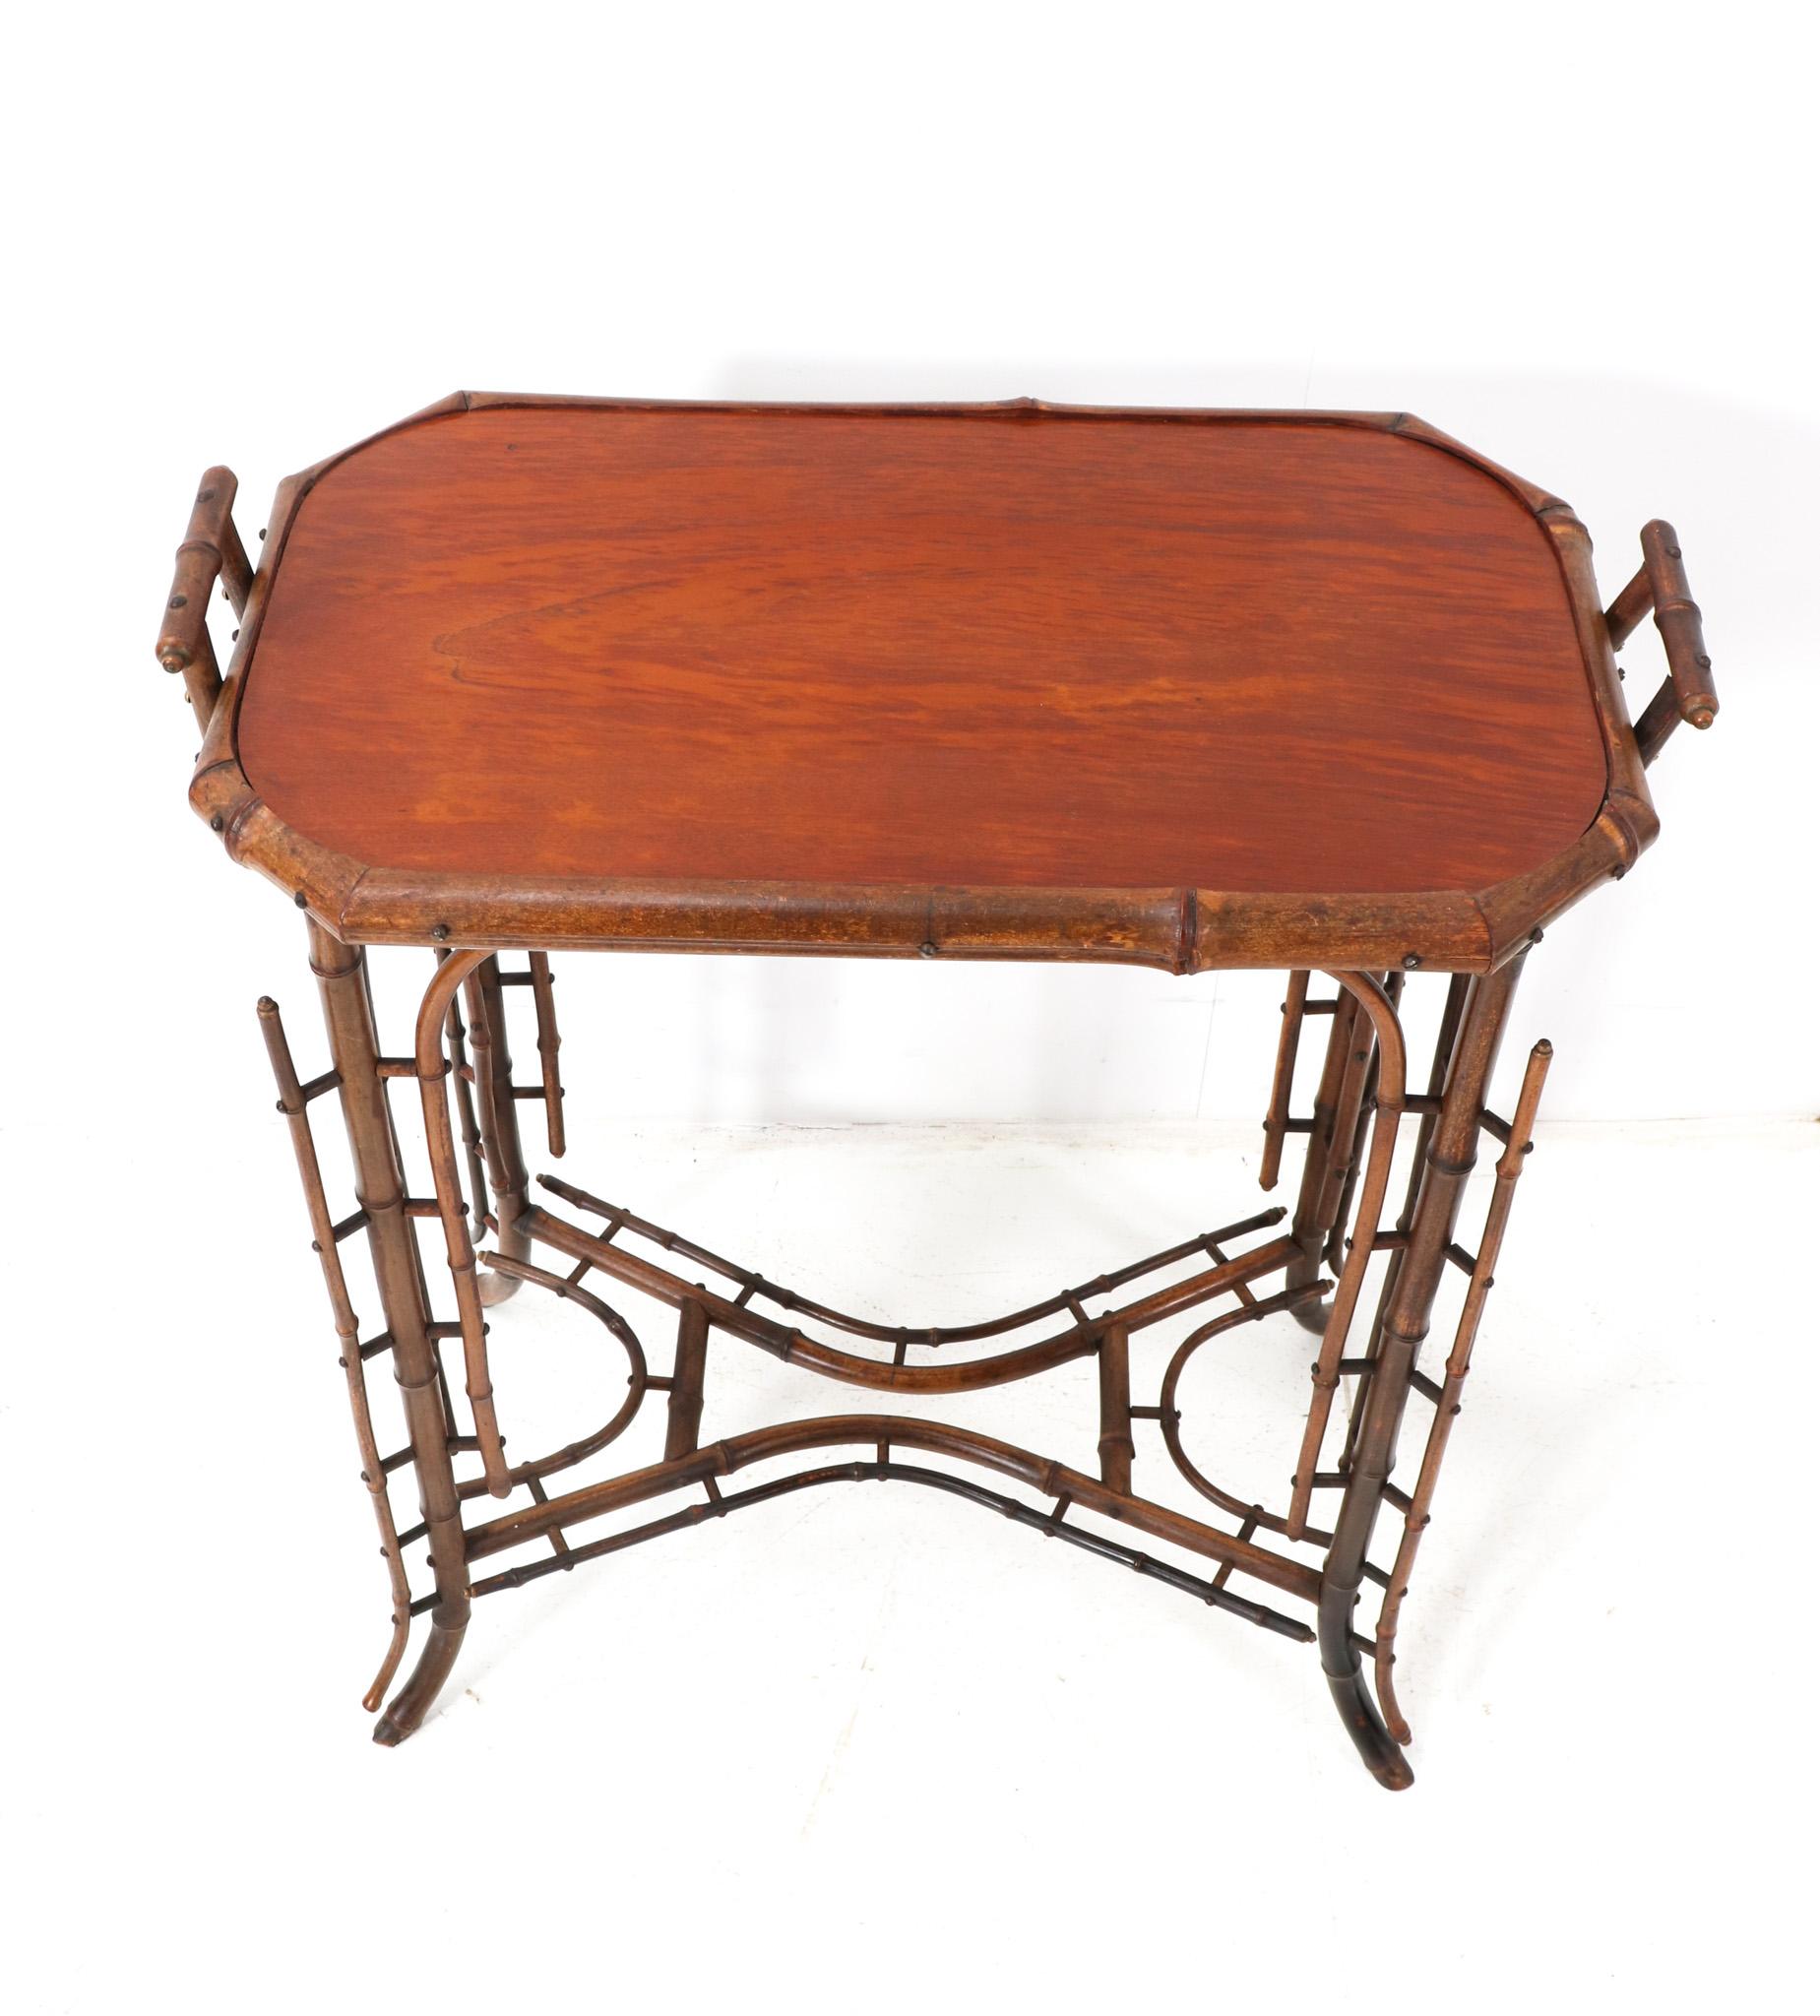 Dutch Bamboo Art Nouveau Tea Table, 1900s For Sale